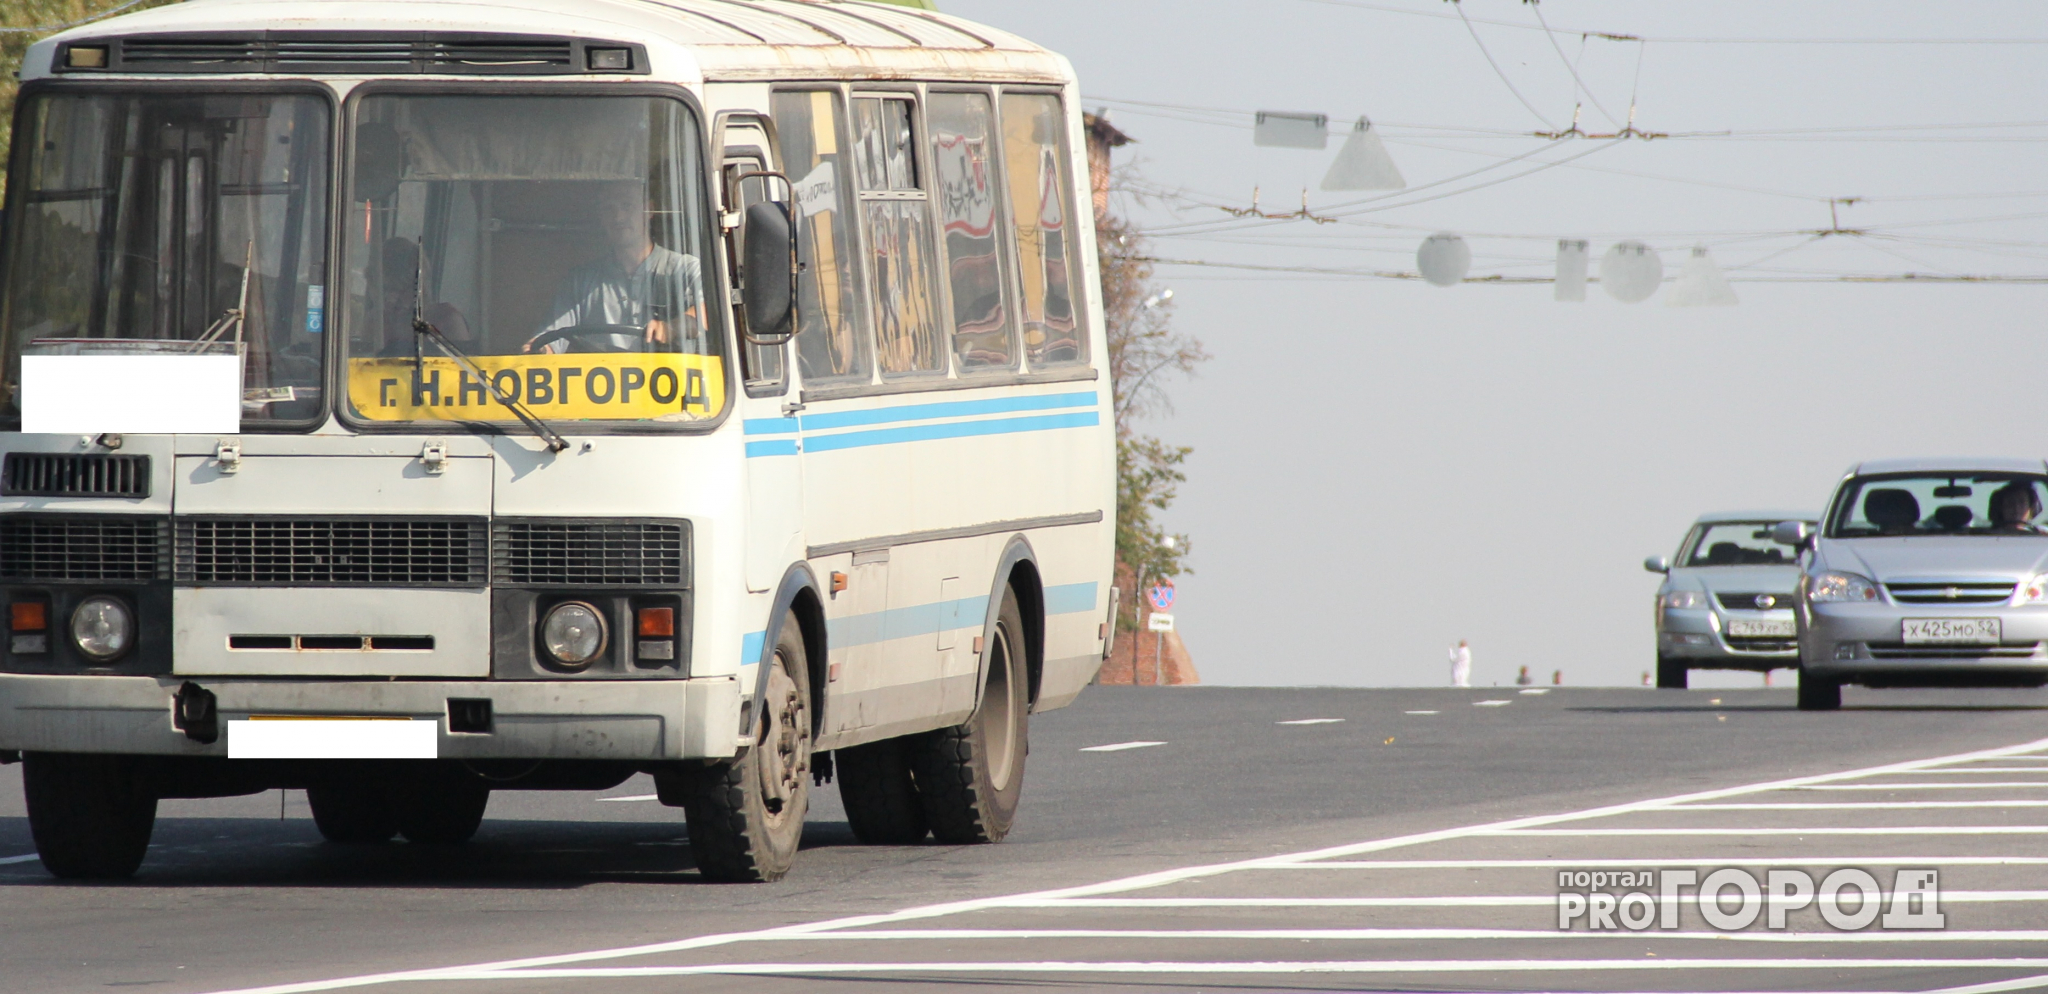 Мэрия Нижнего Новгорода расторгает договор с перевозчиком на маршруте Т-71